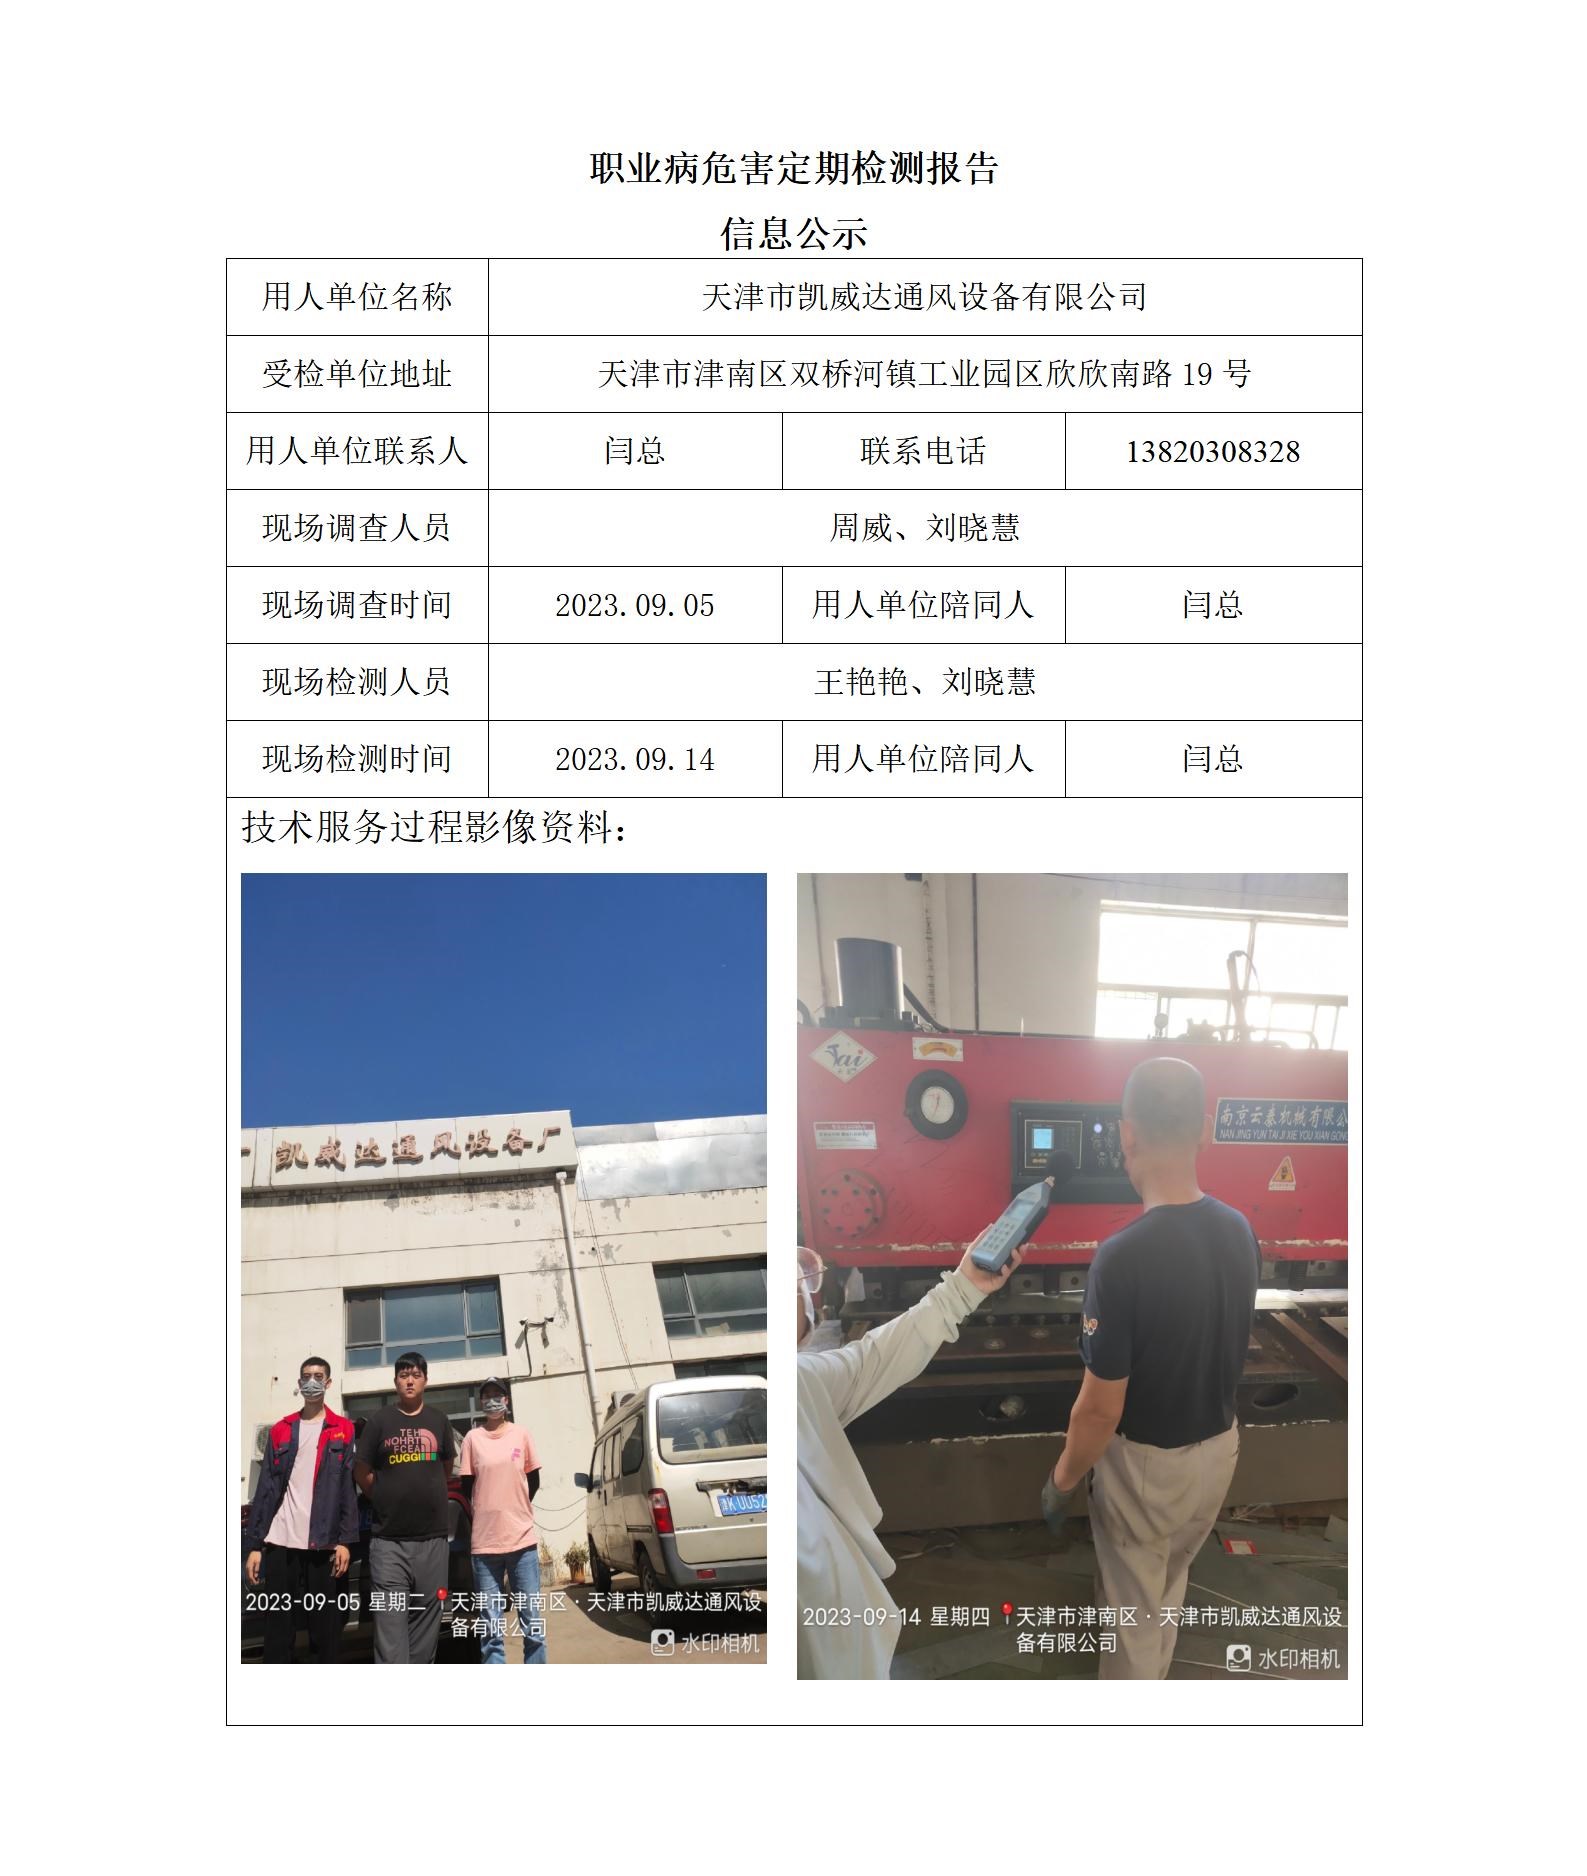 2023.10.24+天津市凯威达通风设备有限公司 职业病危害因素检测与评价报告信息公示_01.jpg